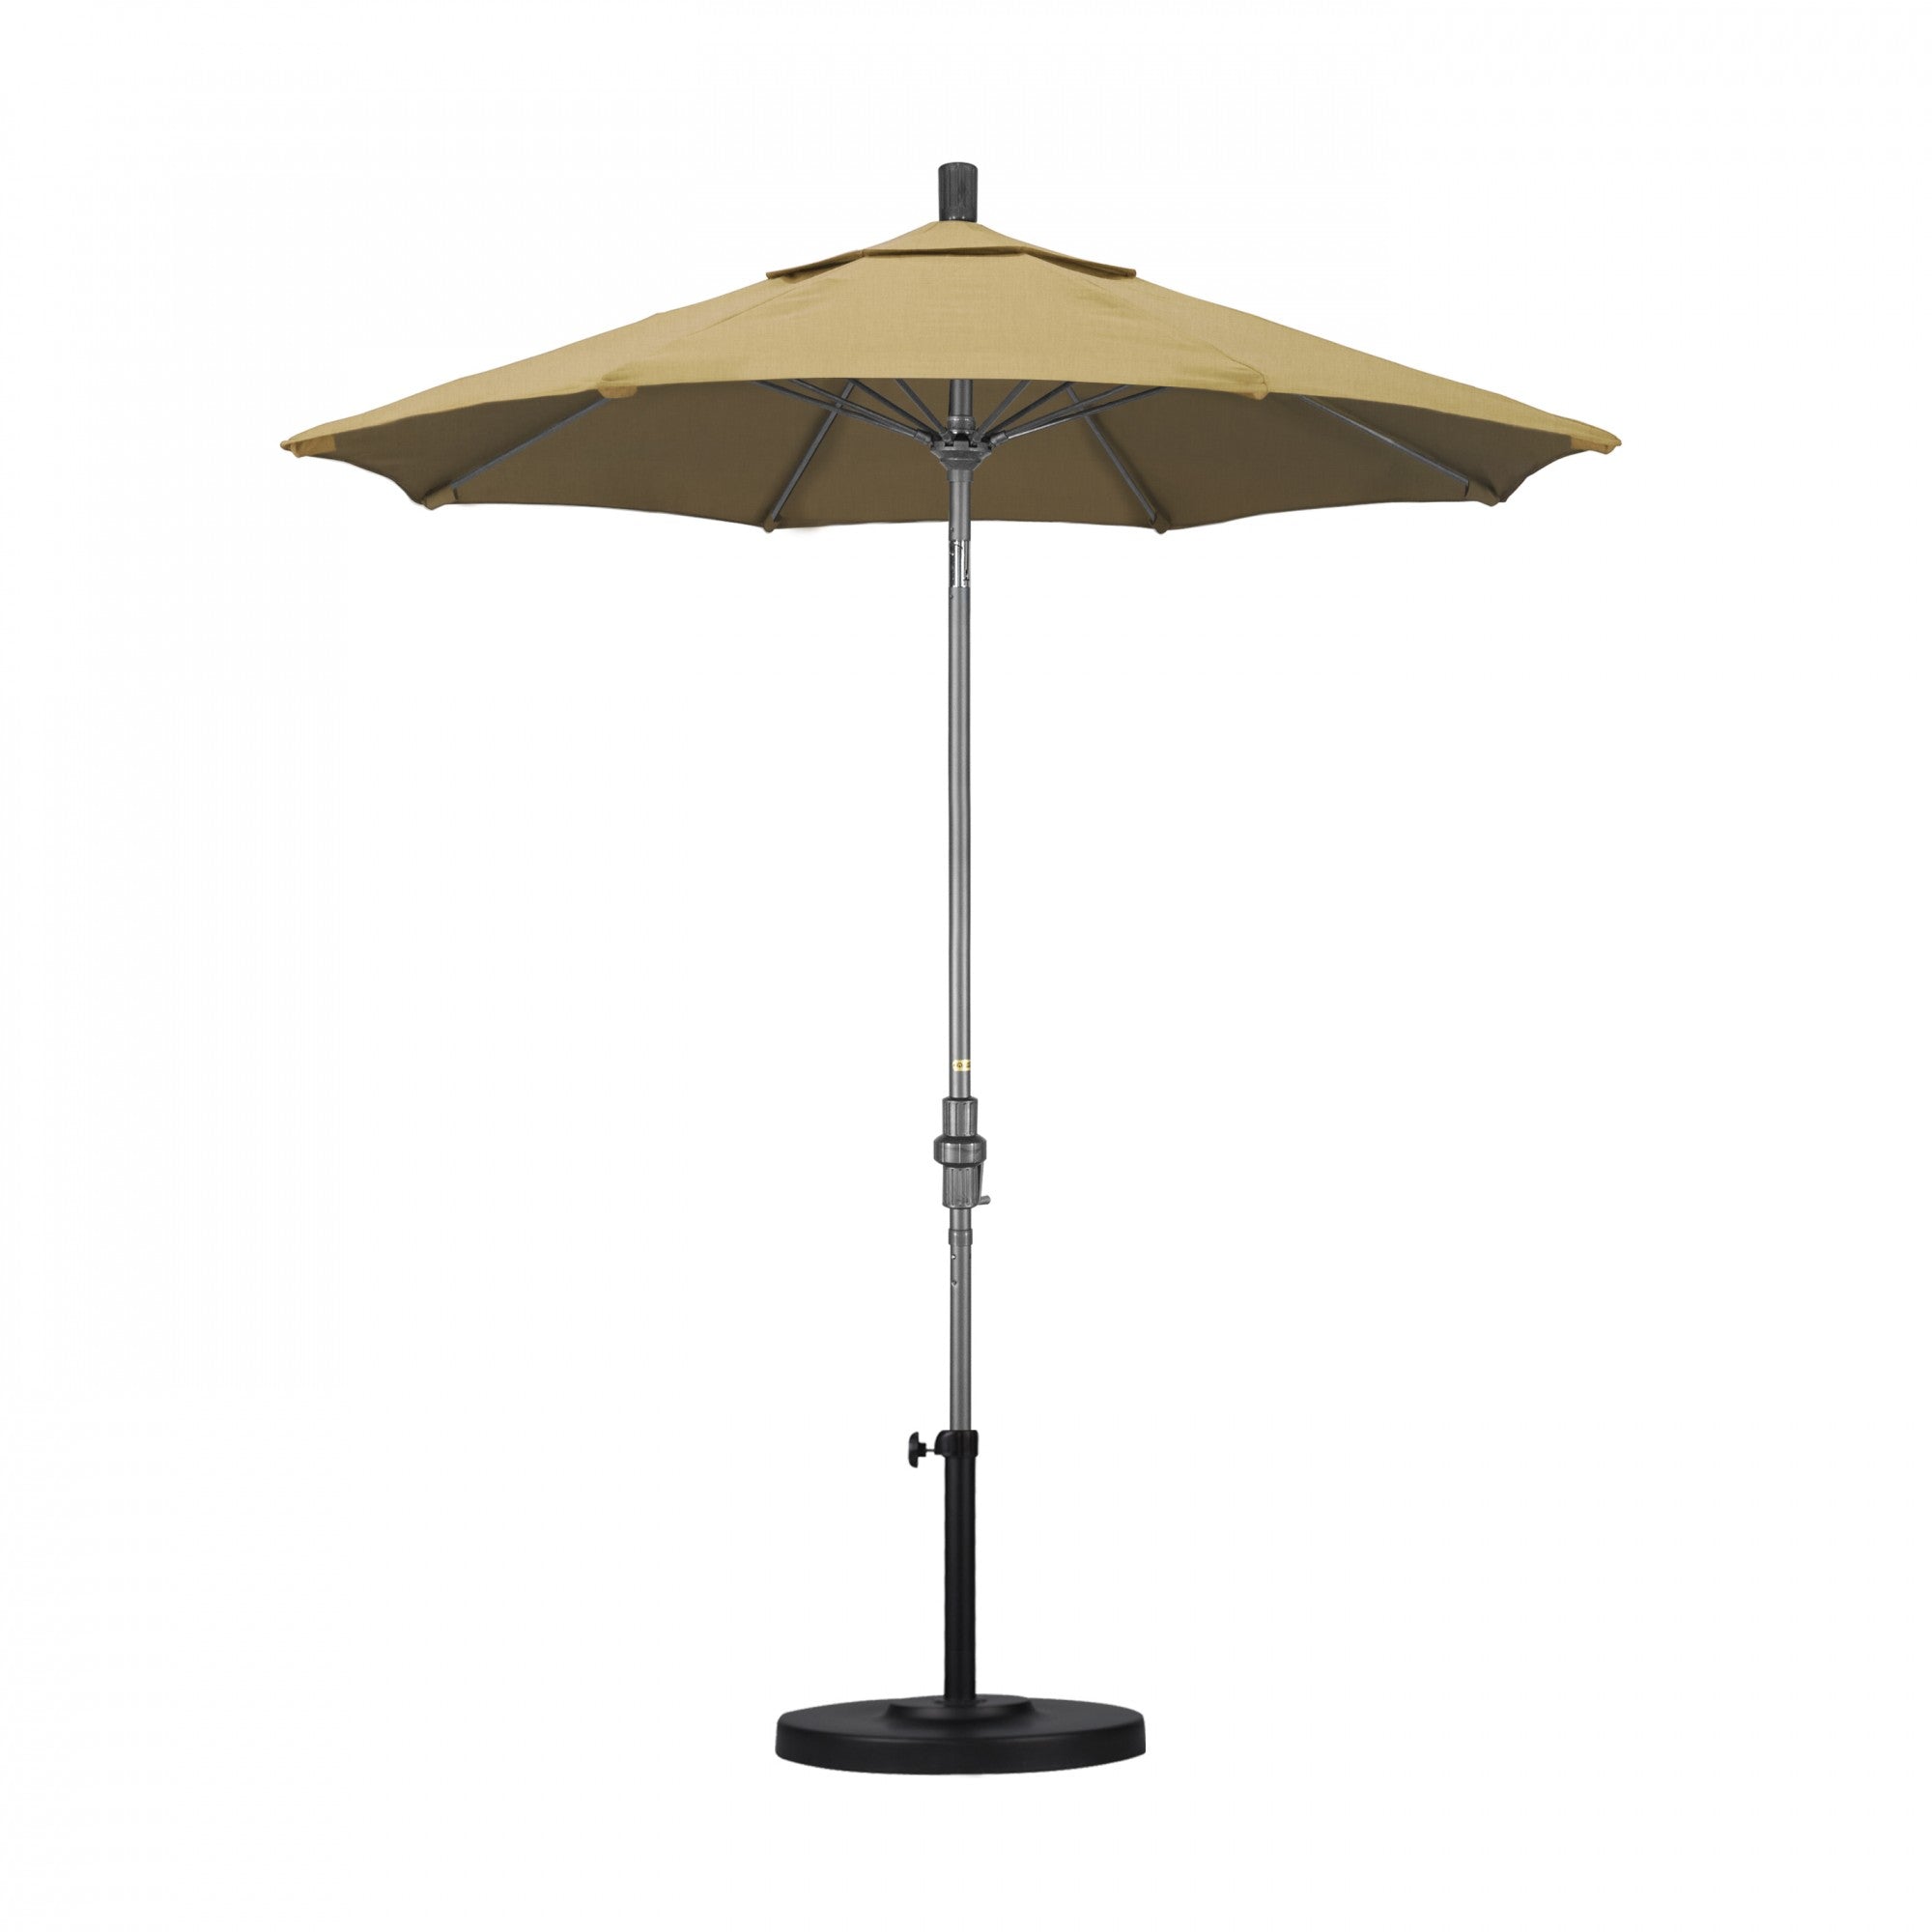 California Umbrella - 7.5' - Patio Umbrella Umbrella - Aluminum Pole - Champagne - Olefin - GSCUF758010-F67